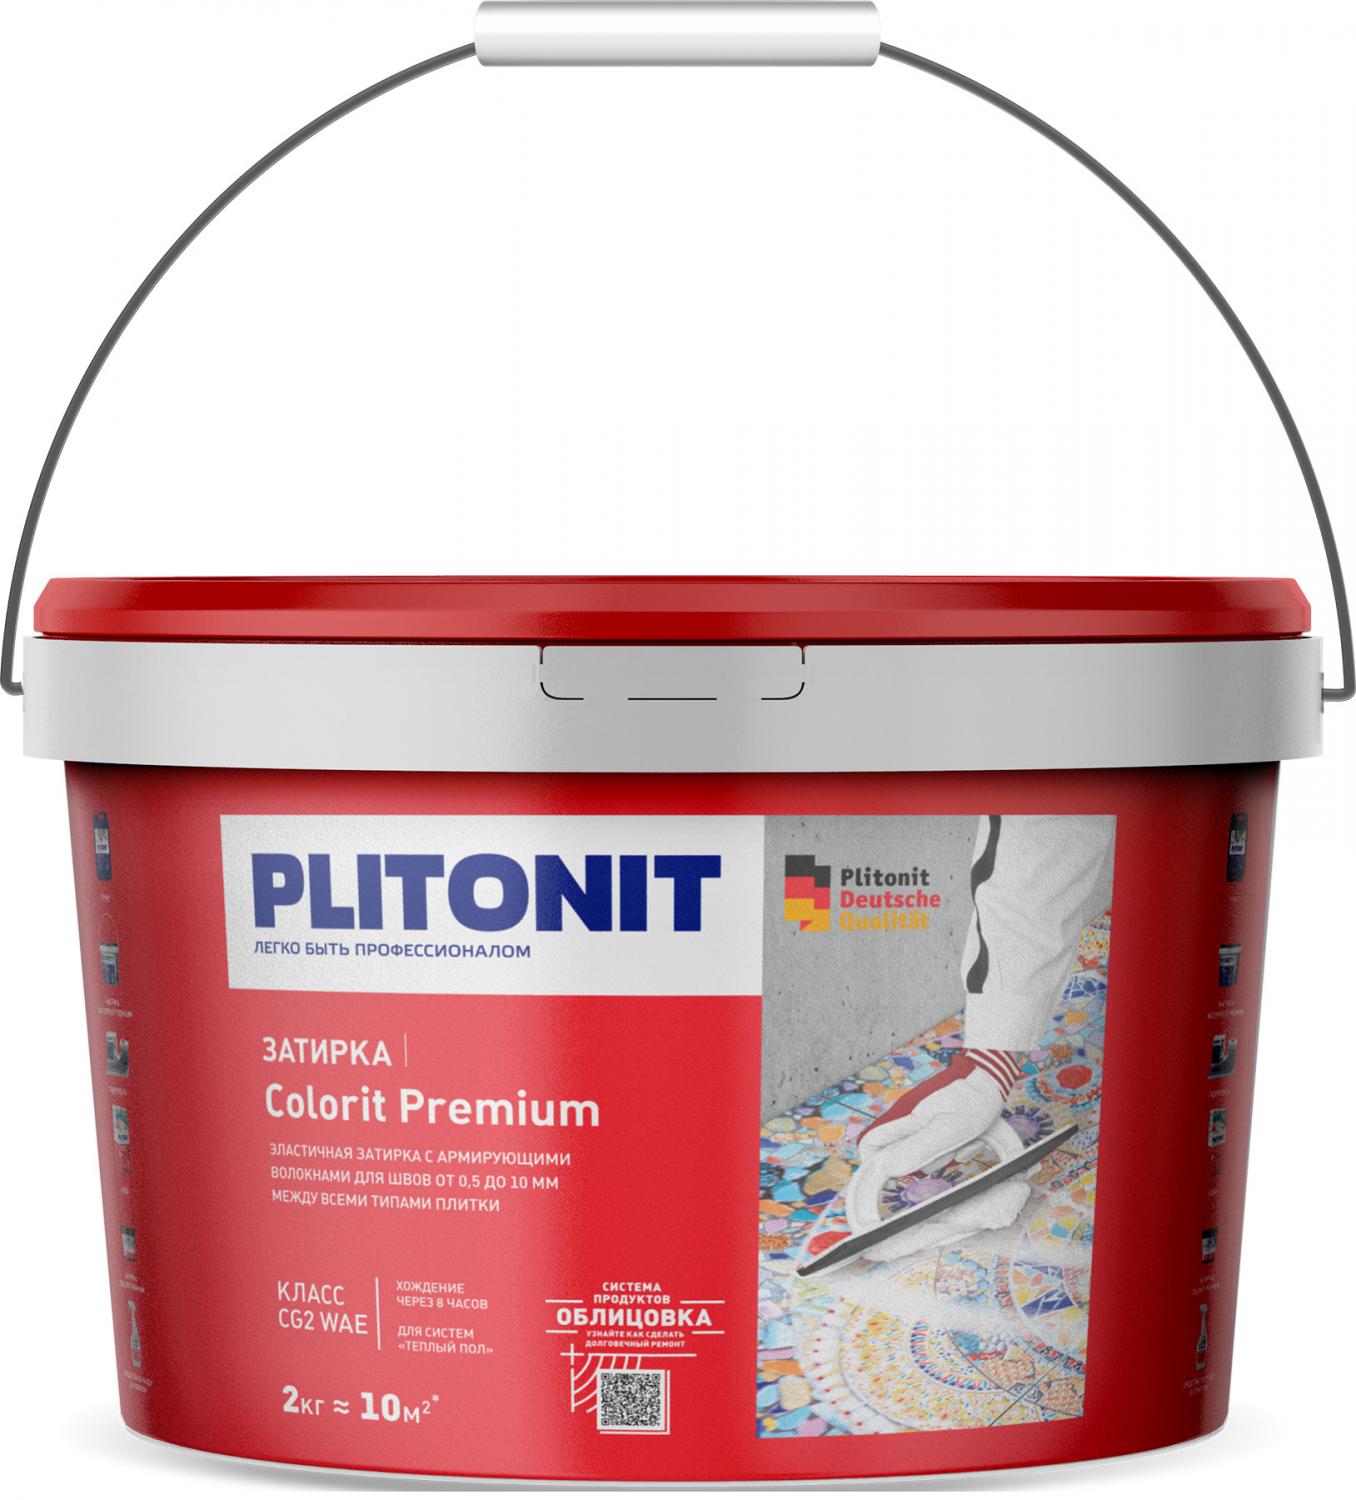 Купить Затирка Plitonit Colorit Premium серая 2 кг цементная